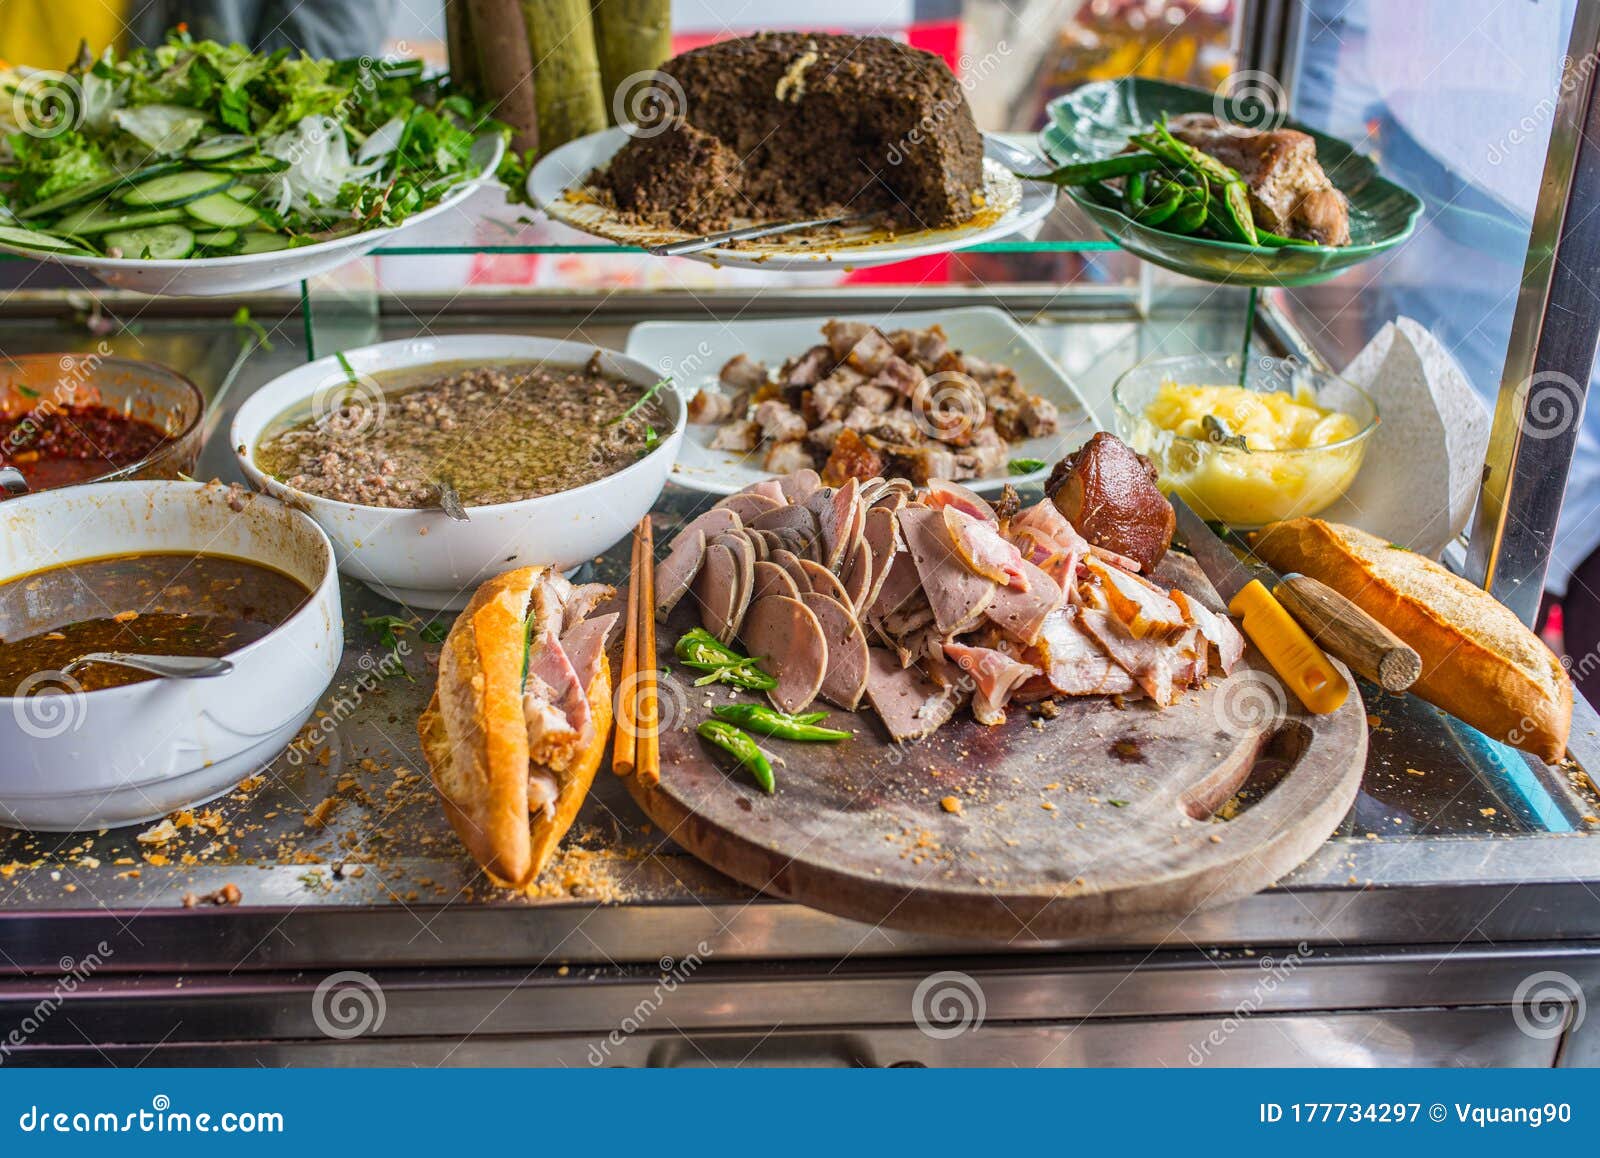 文太农 — 越南烤猪肉和米面：是粉丝面、烤猪肉、春卷、食用的混合物 库存照片 - 图片 包括有 面条, 健康: 187742184